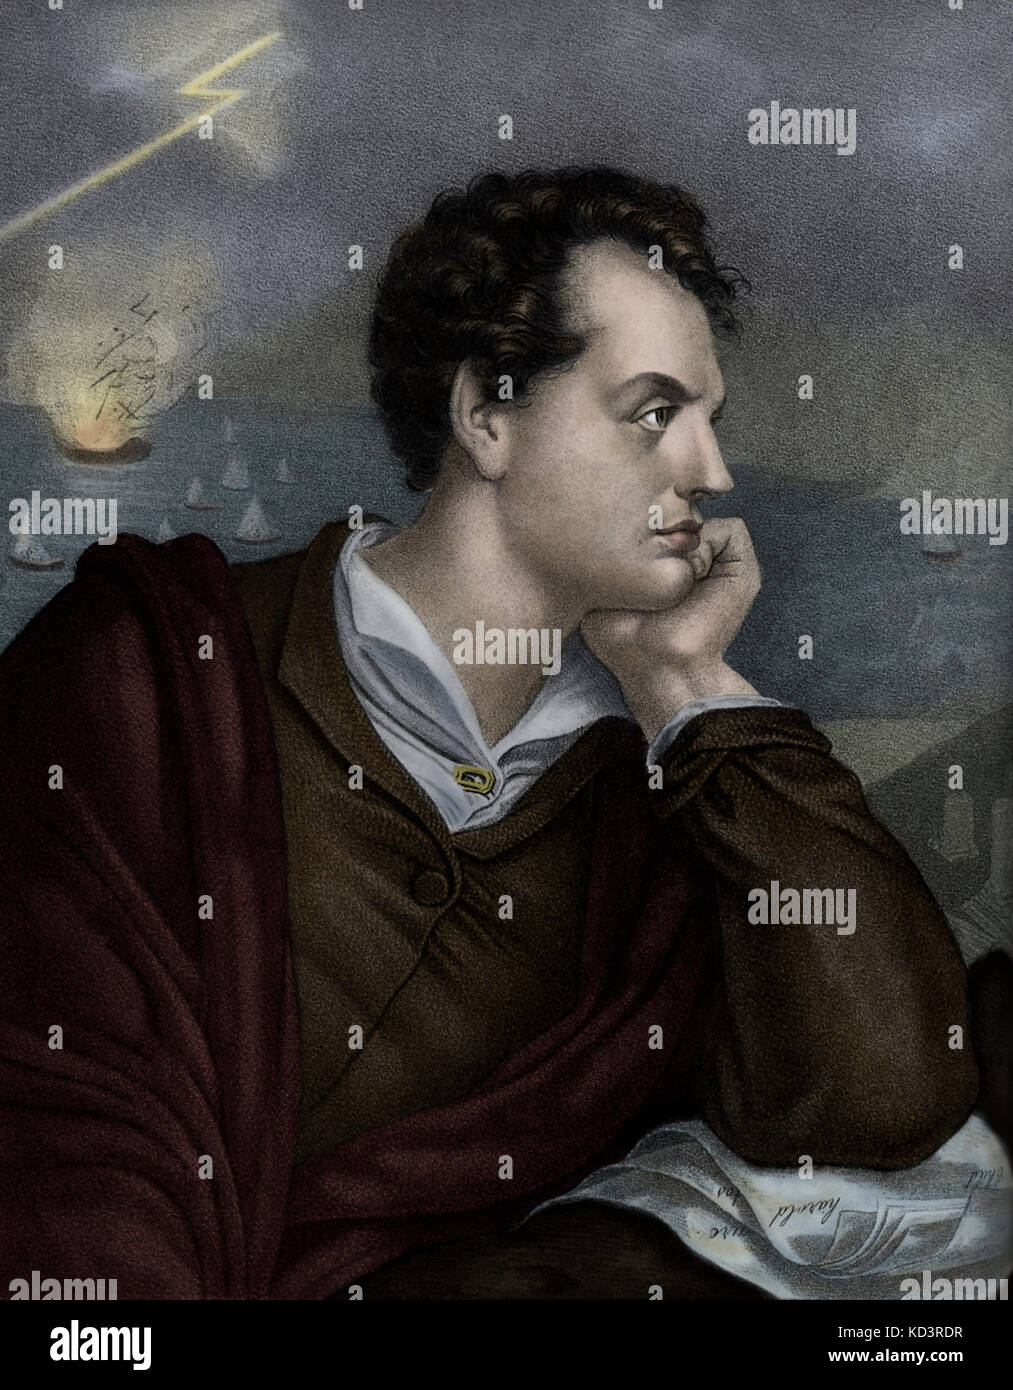 George Gordon Byron, sexto Barón Byron. Retrato del poeta británico conocido como Lord Byron. 22 de enero de 1788 - 19 de abril de 1824 Foto de stock